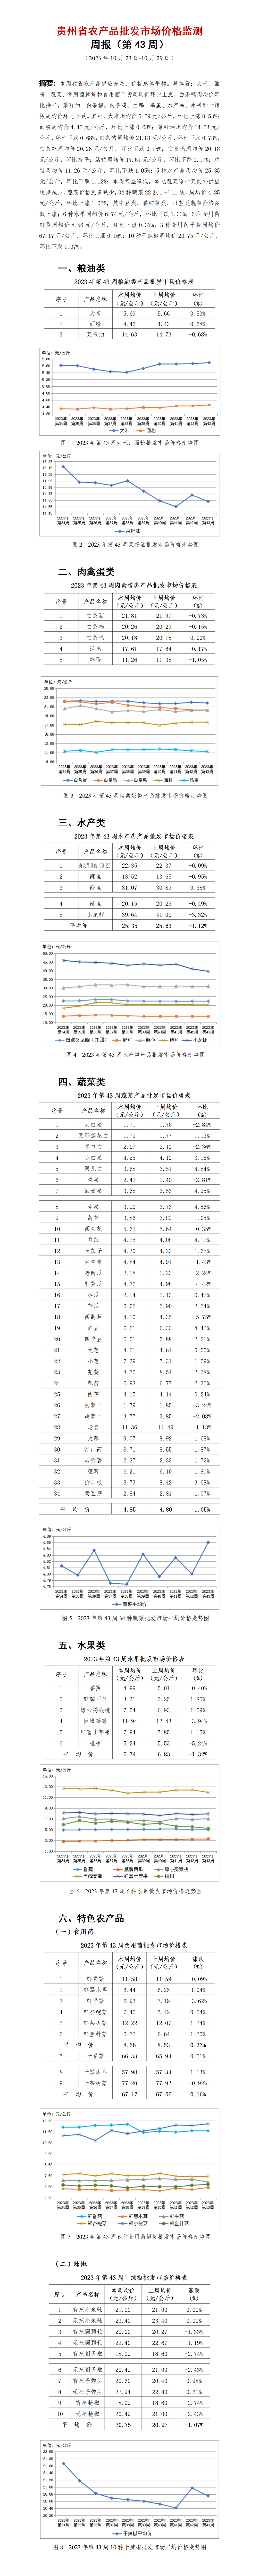 2023年43周-贵州省农产品批发市场价格监测周报-定_01